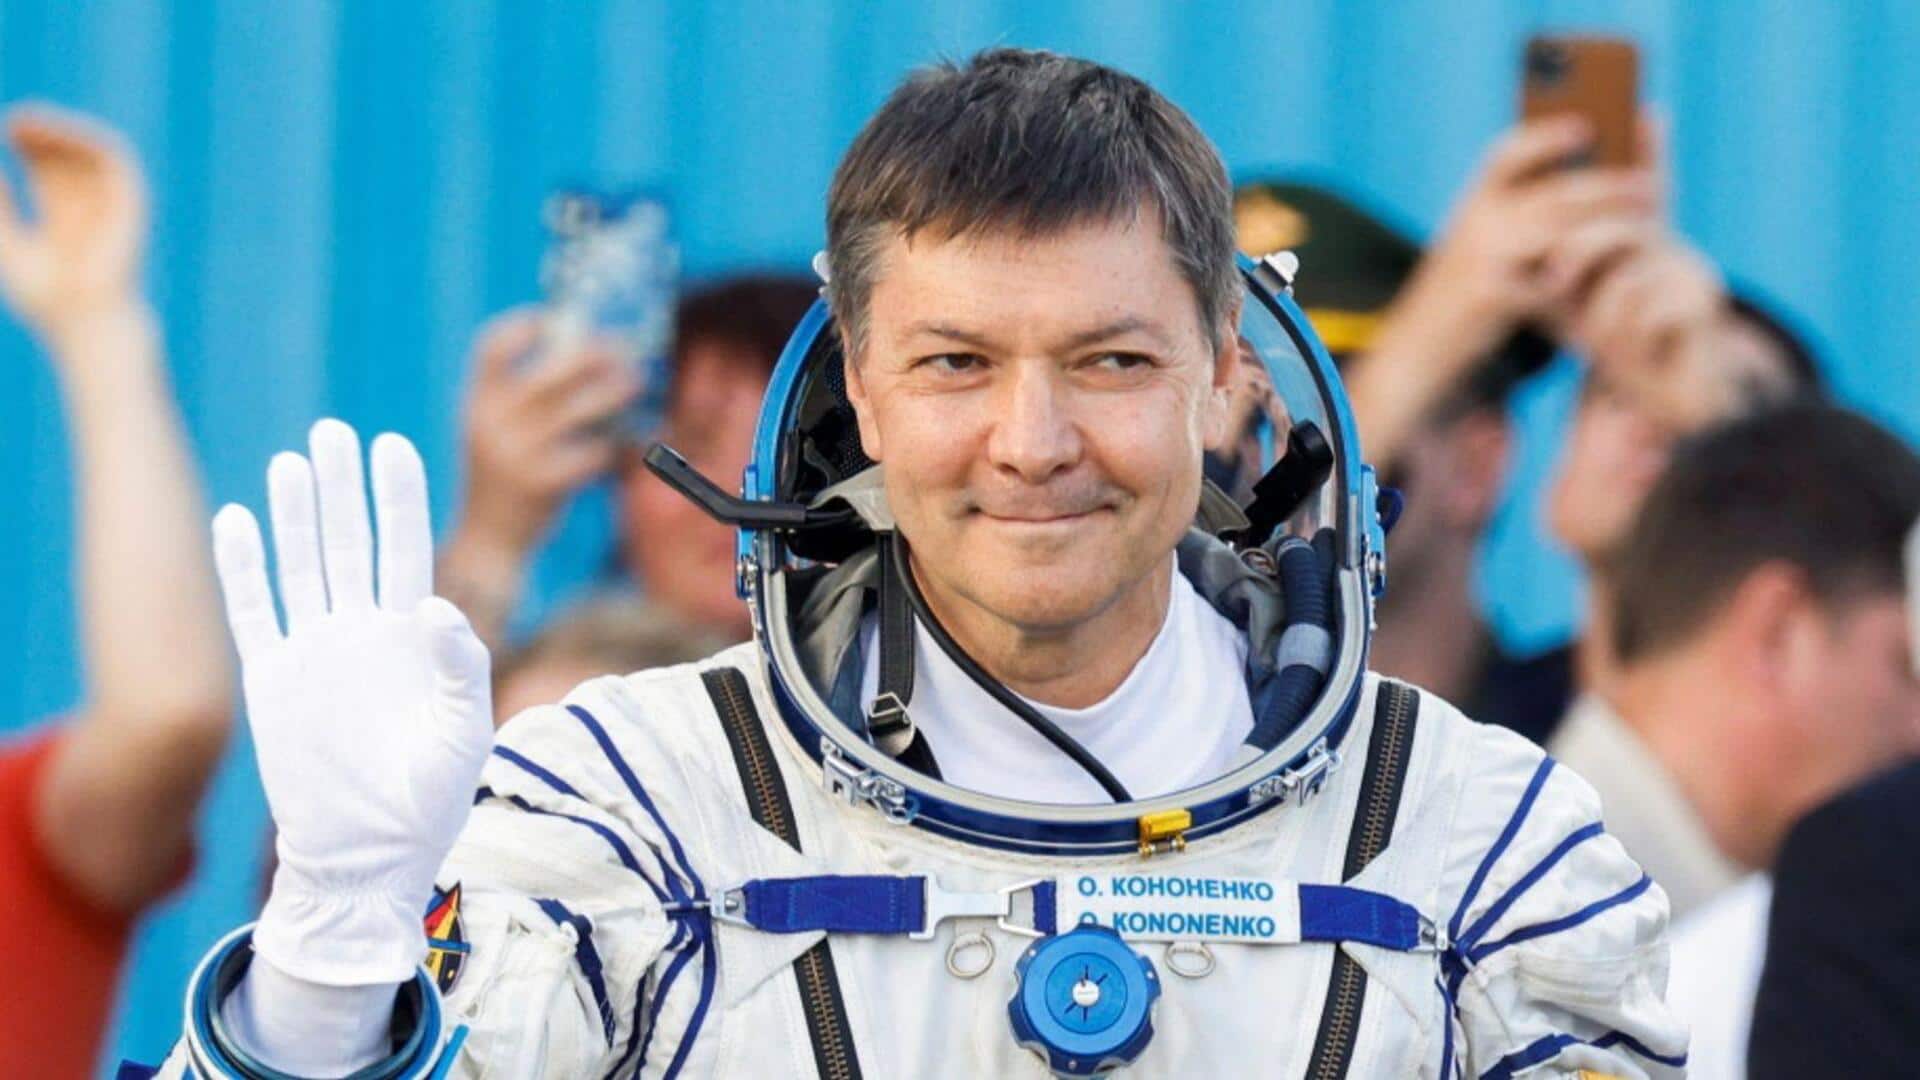 Meet Oleg Kononenko: Record holder for longest time in space